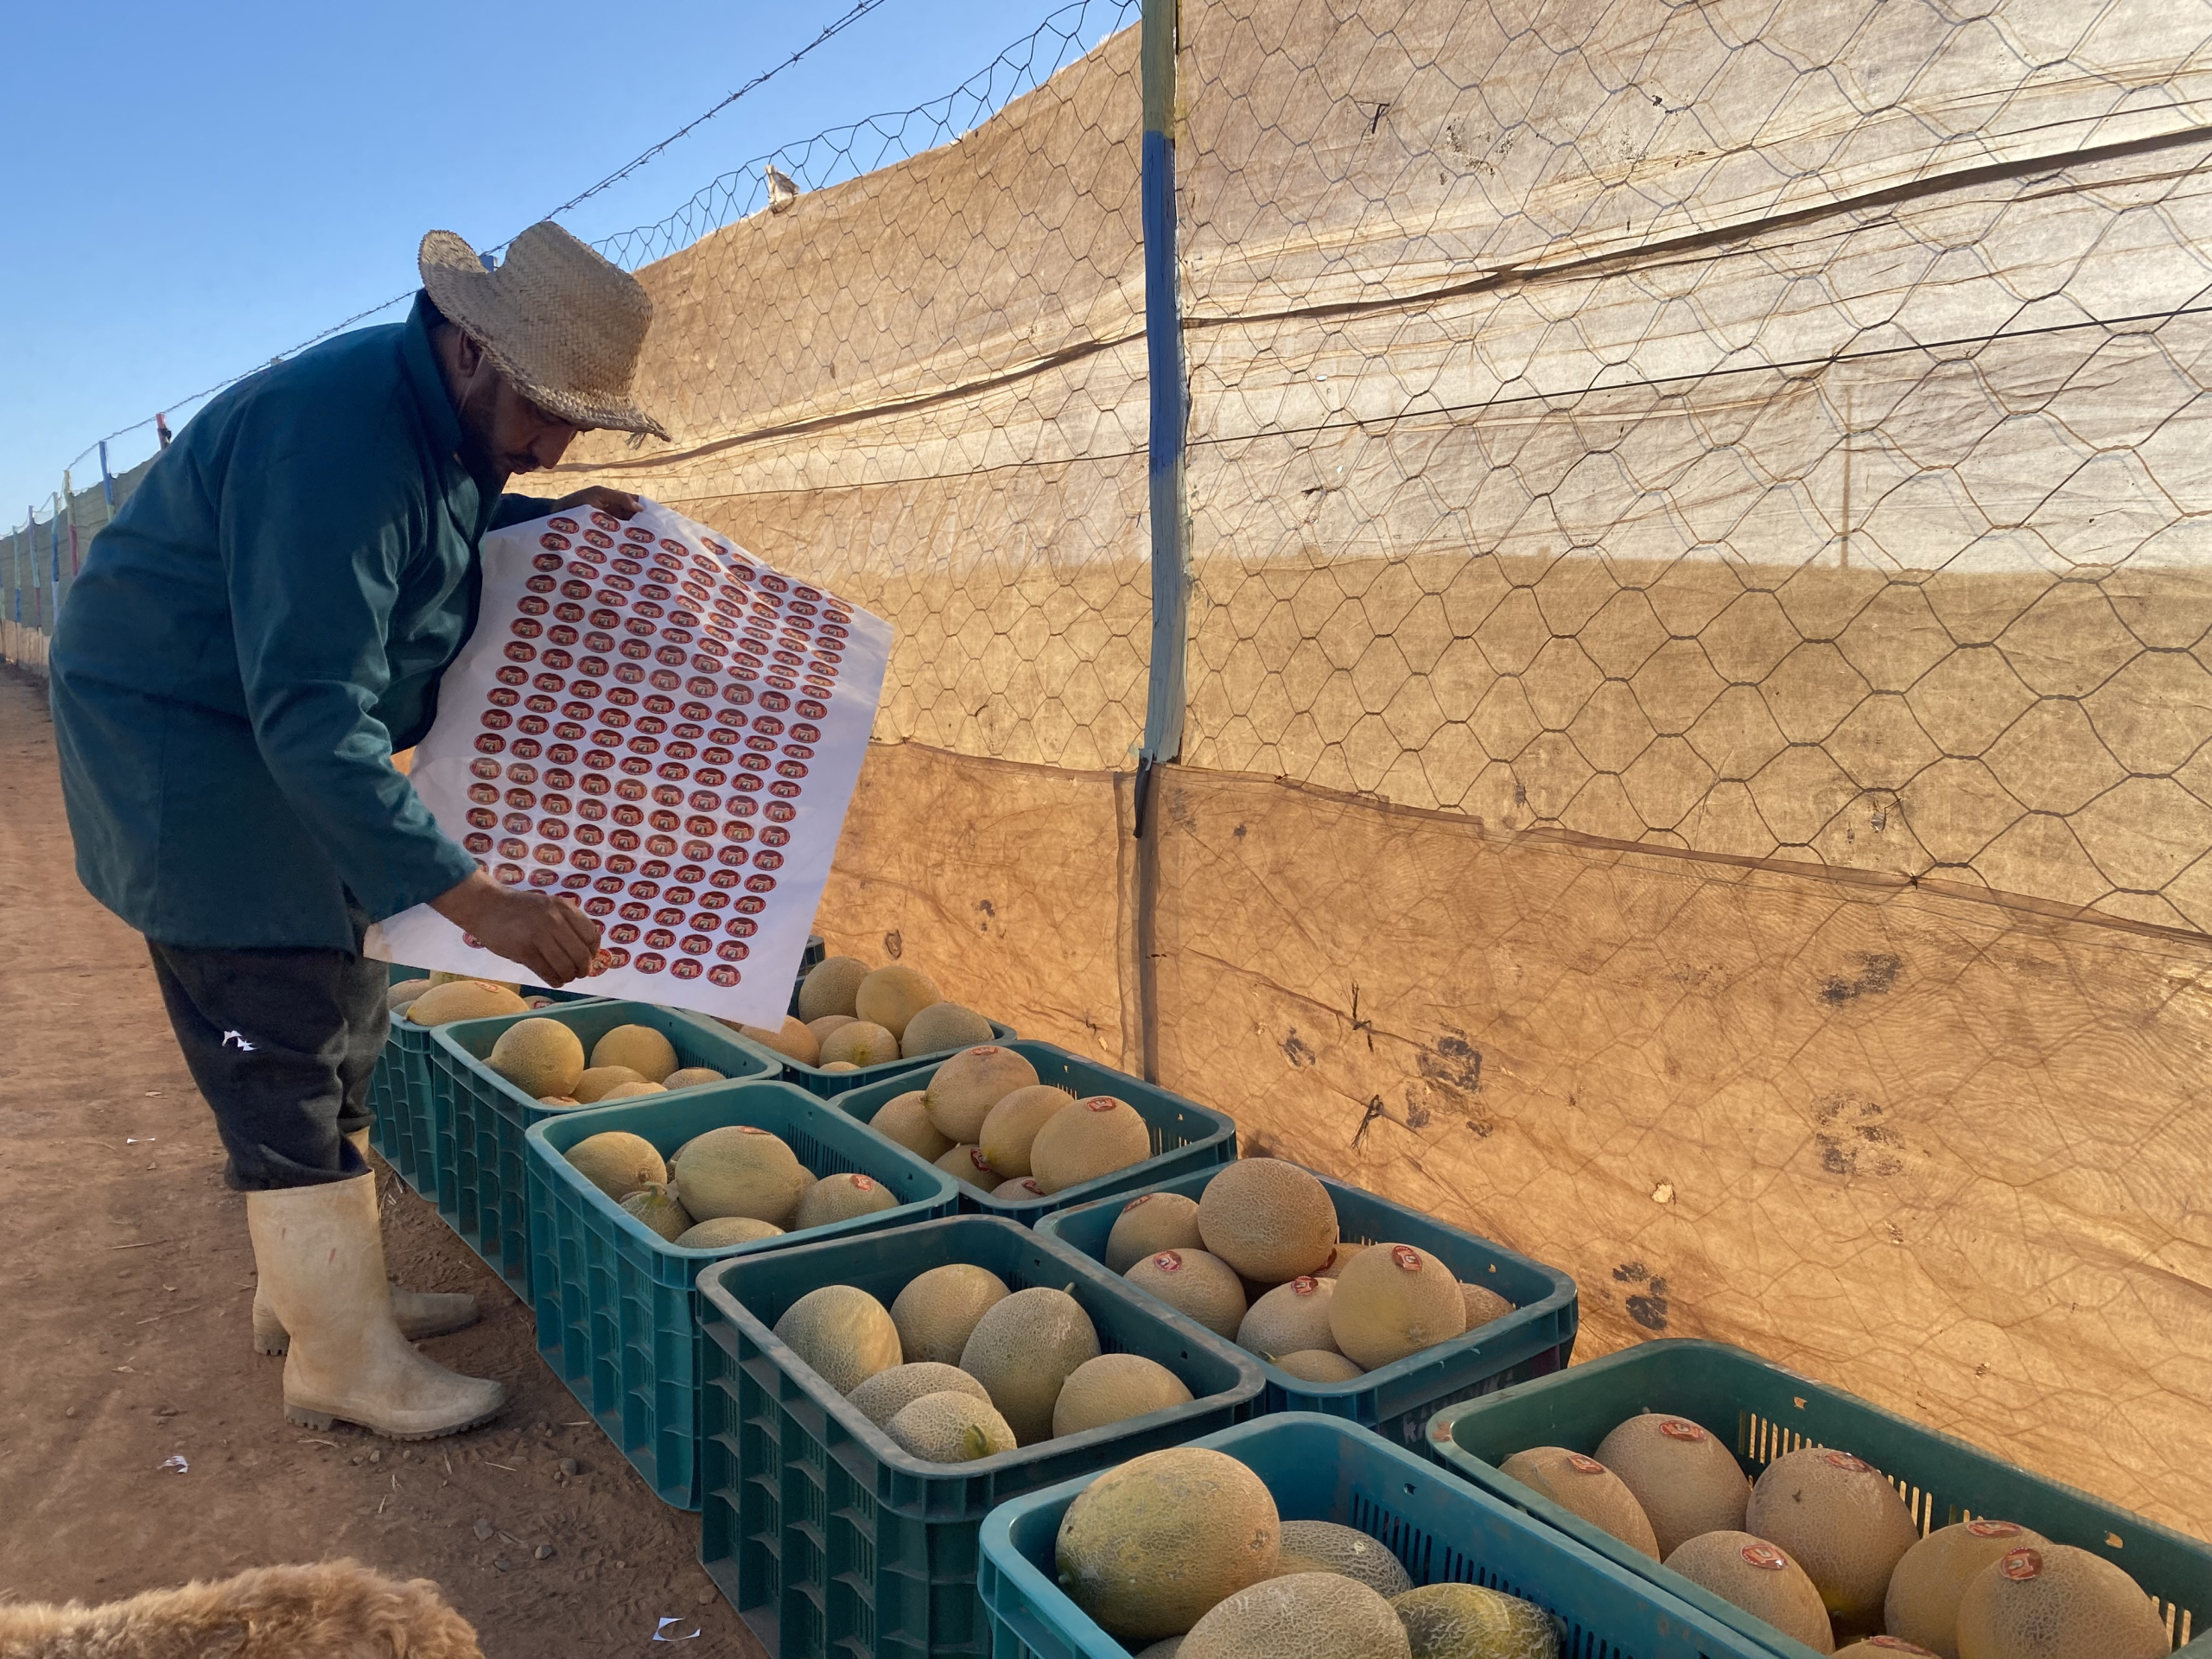 حقيقة أم ابتزاز؟.. إنذار أوروبي جديد حول تلوث شحنة بطيخ مغربية